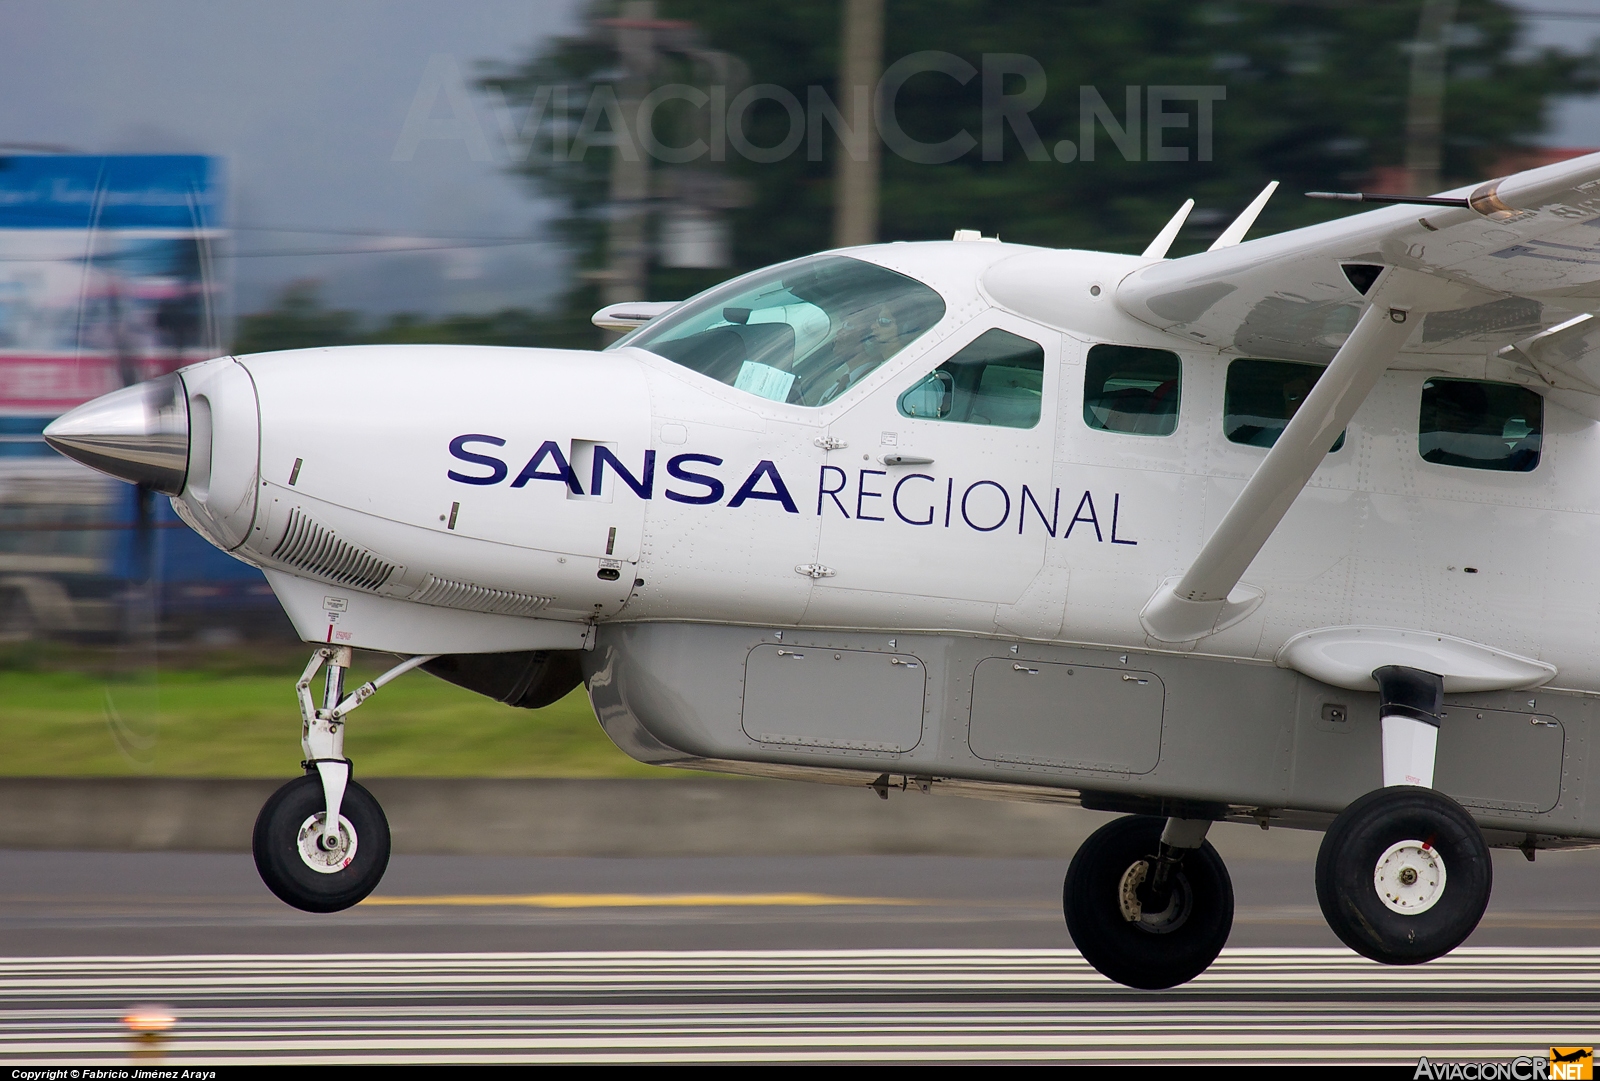 TI-BCV - Cessna 208B Grand Caravan - SANSA - Servicios Aereos Nacionales S.A.